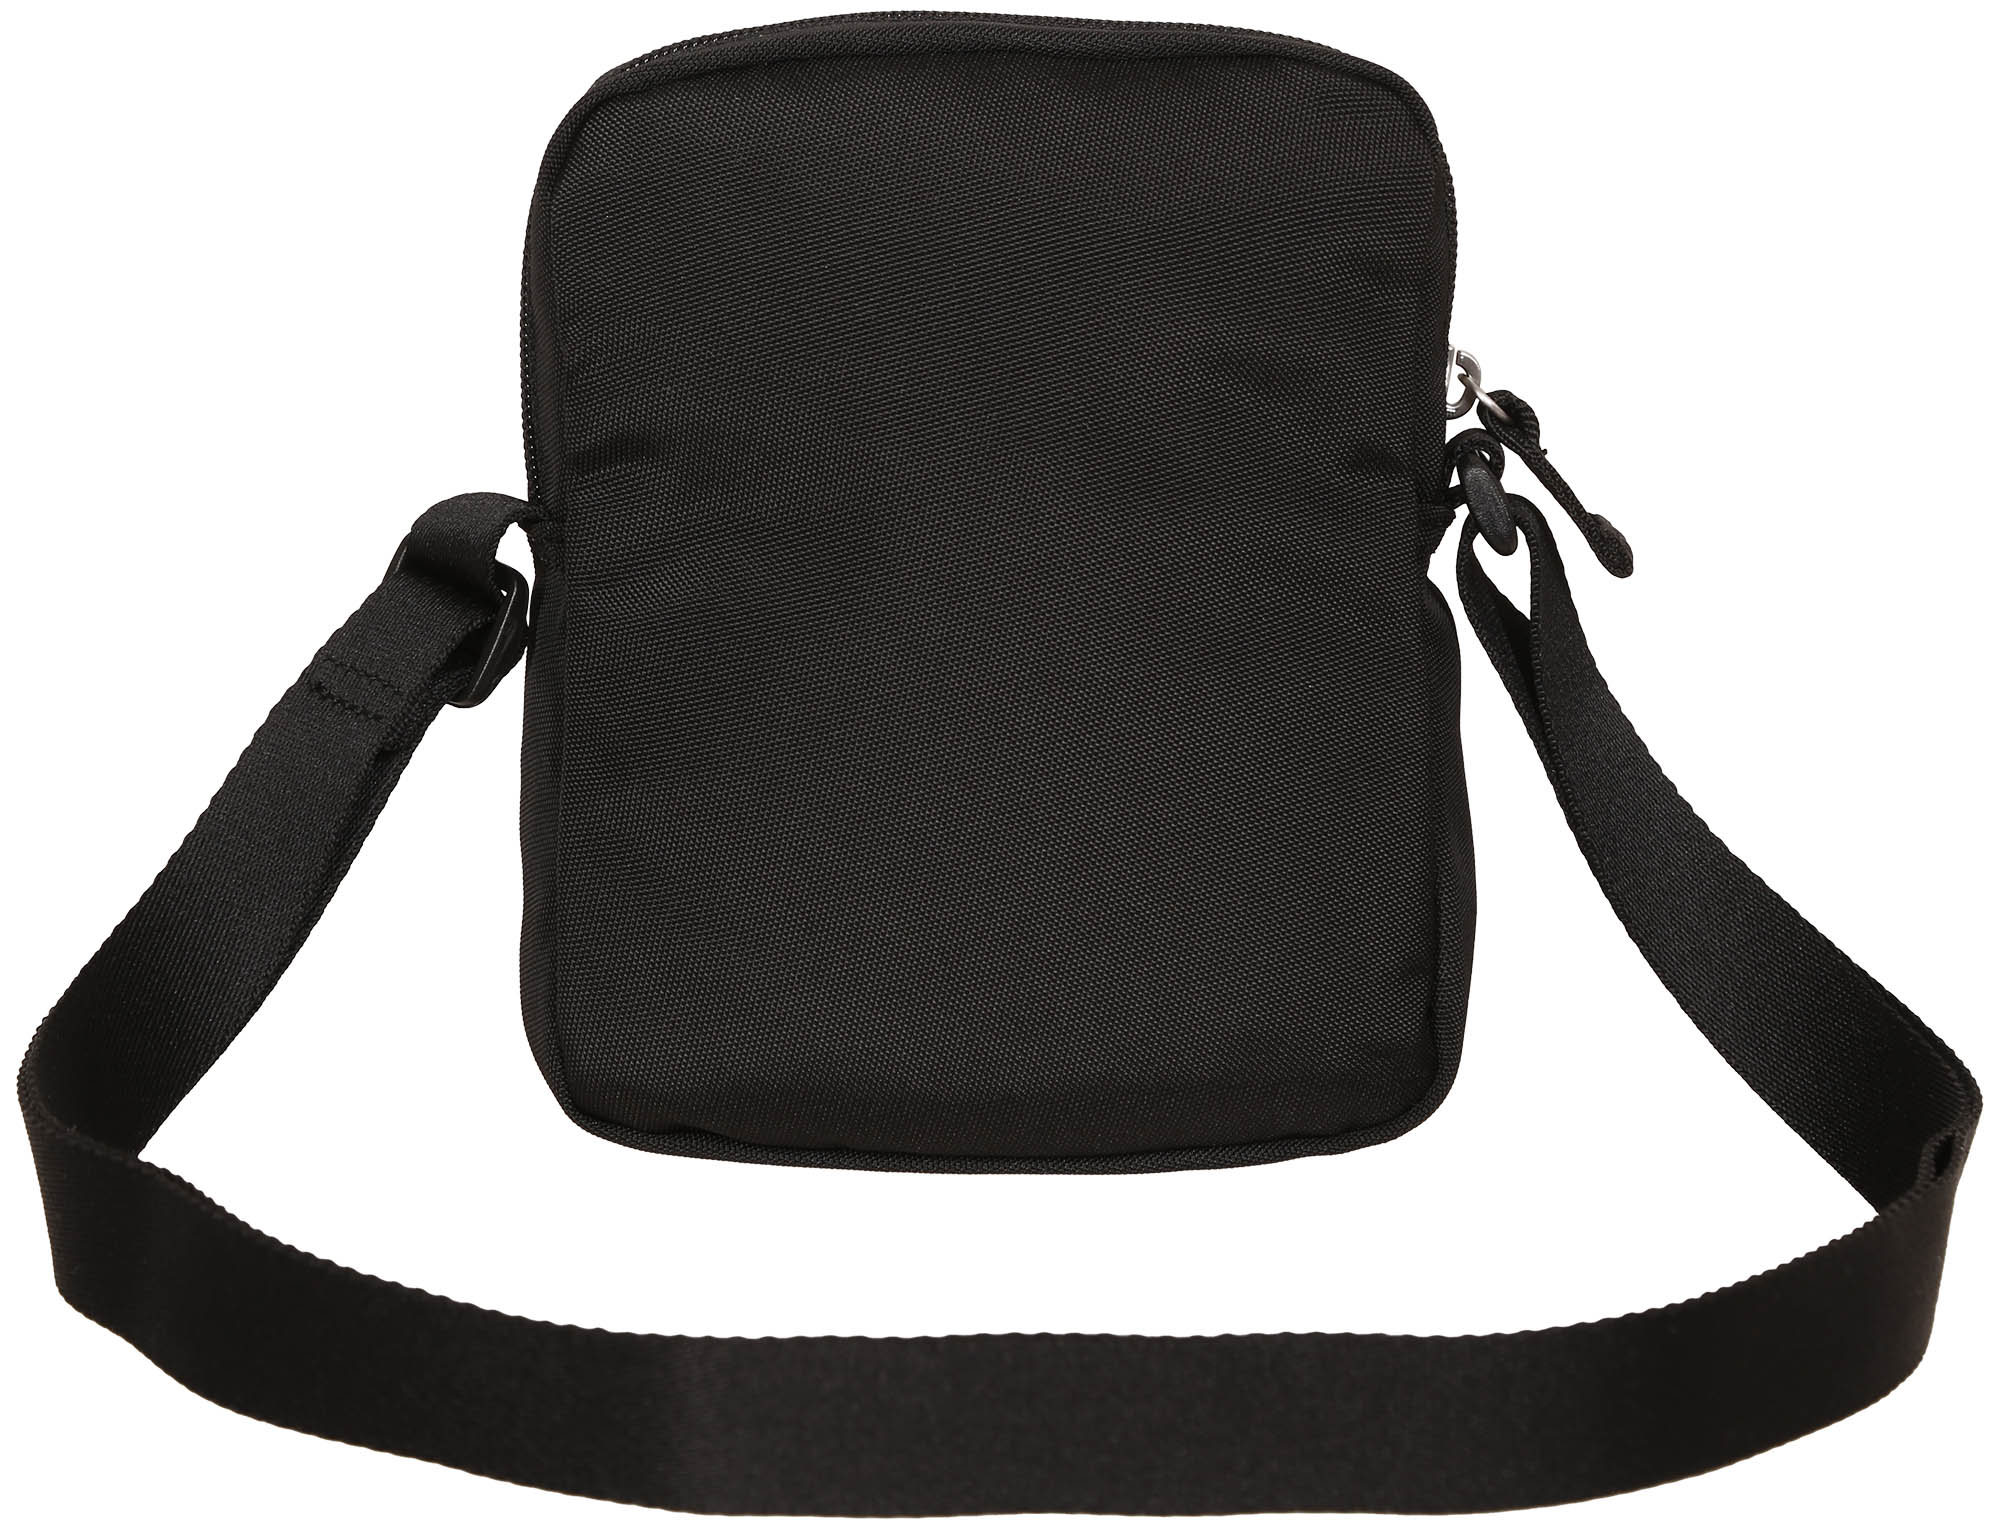 Unisex shoulder bag